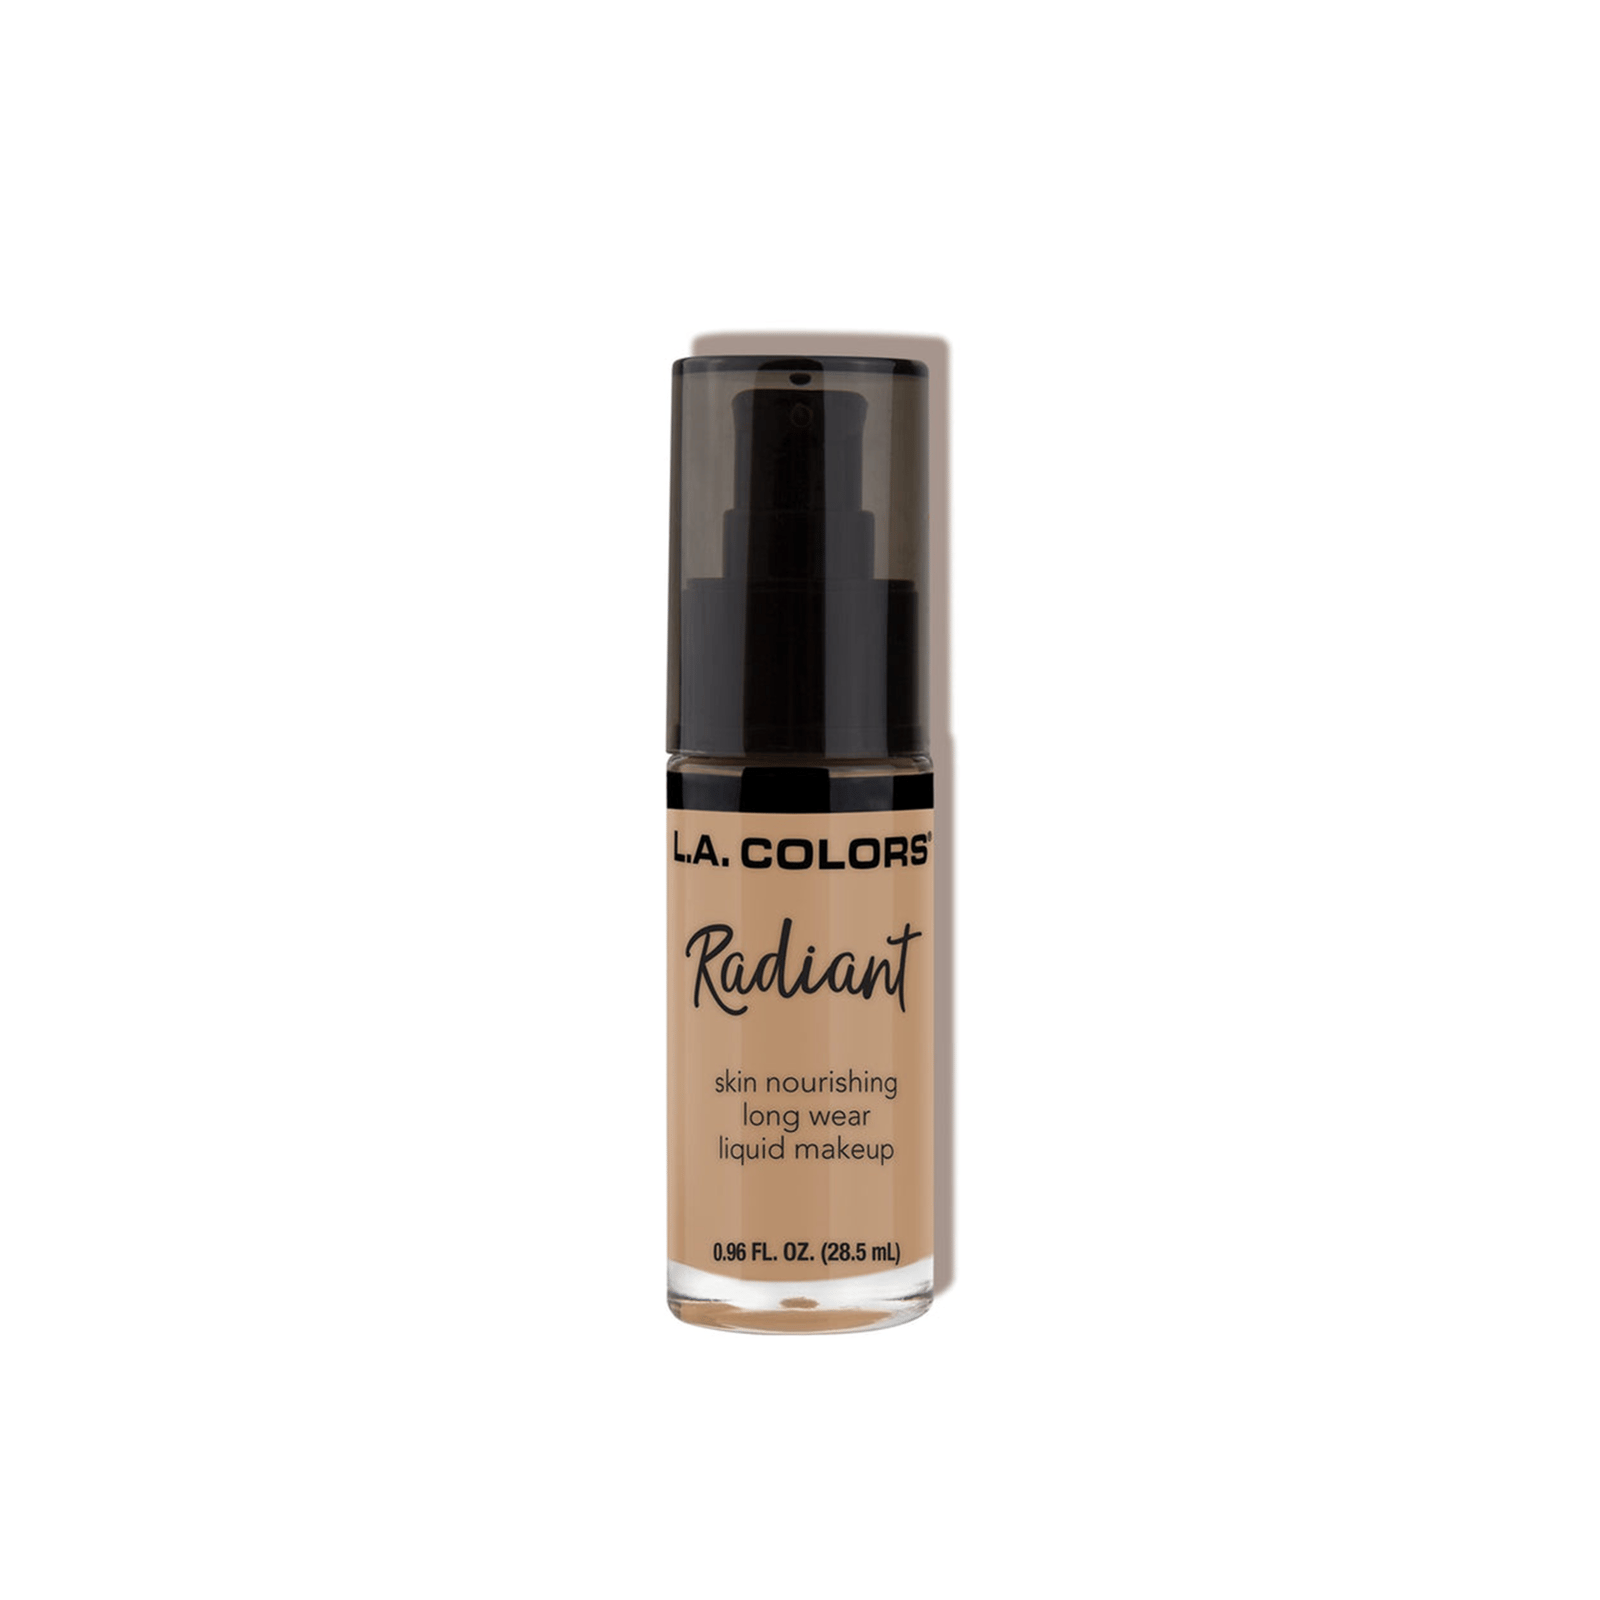 L.A. Colors Radiant Liquid Makeup Foundation CLM389 Medium Beige 28.5ml